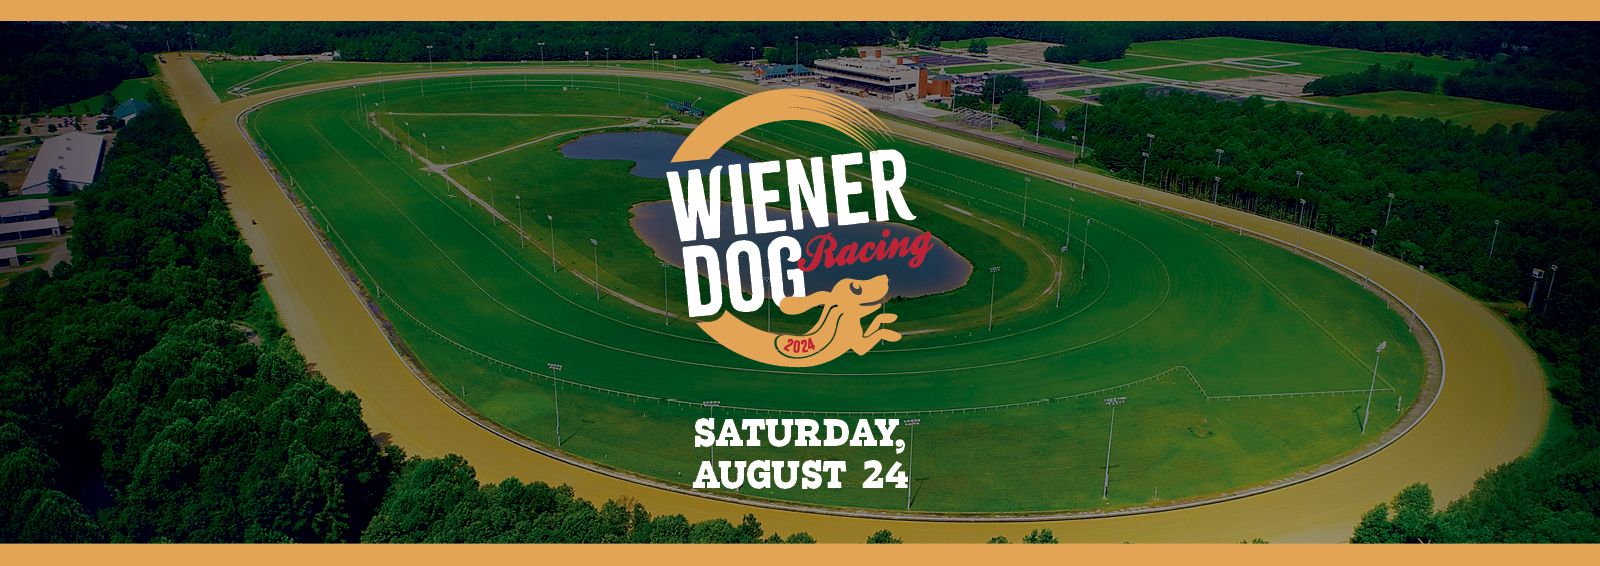 Wiener Dog Racing Saturday, August 24